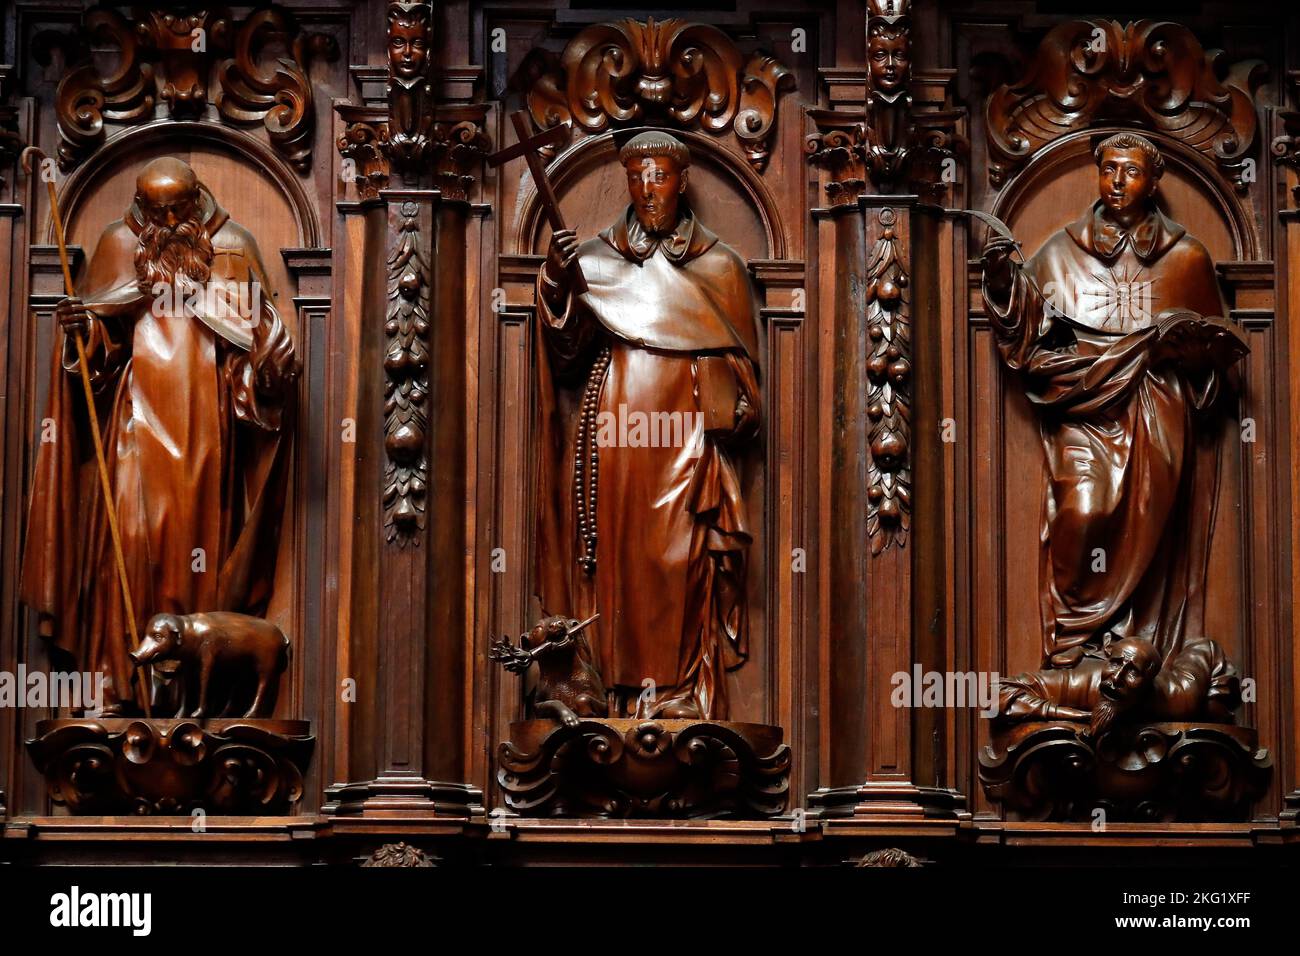 Cattedrale di Malaga. Interno della cattedrale. Le bancarelle con i santi cristiani. Spagna. Foto Stock